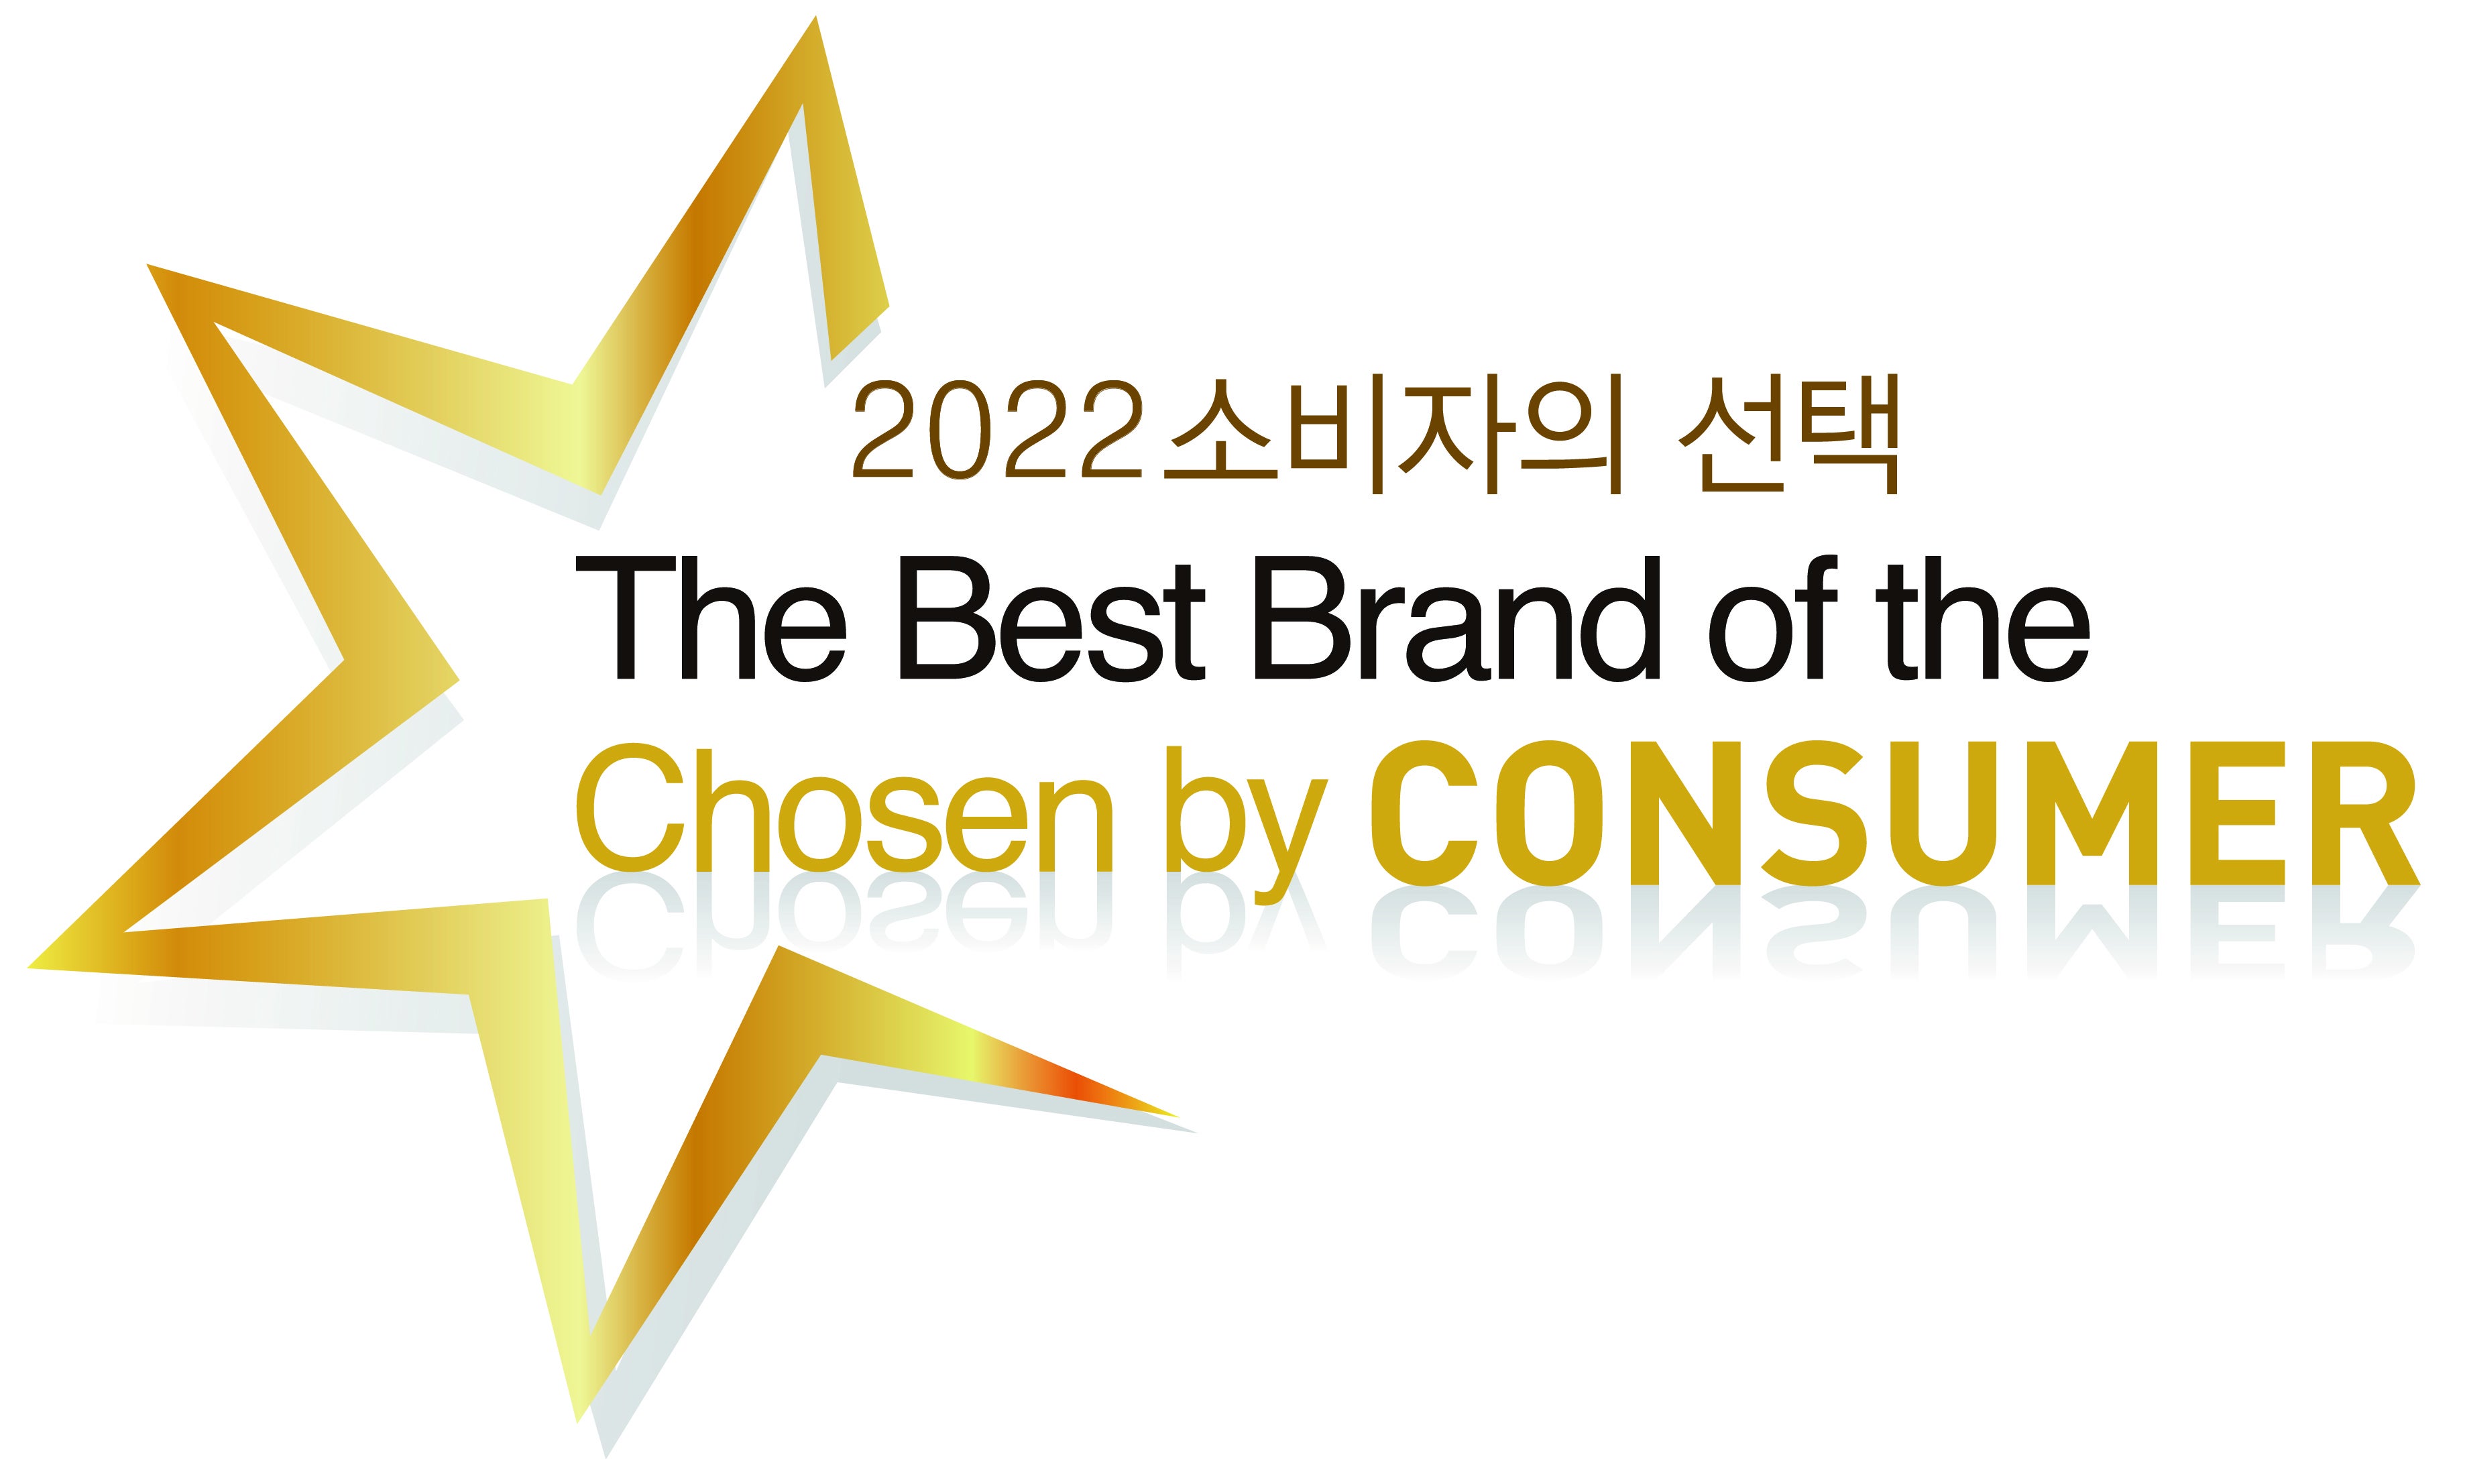 로버트 월터스 코리아 '2021 소비자의 선택 - 글로벌 채용 컨설팅 부문' 3년 연속 대상 수상